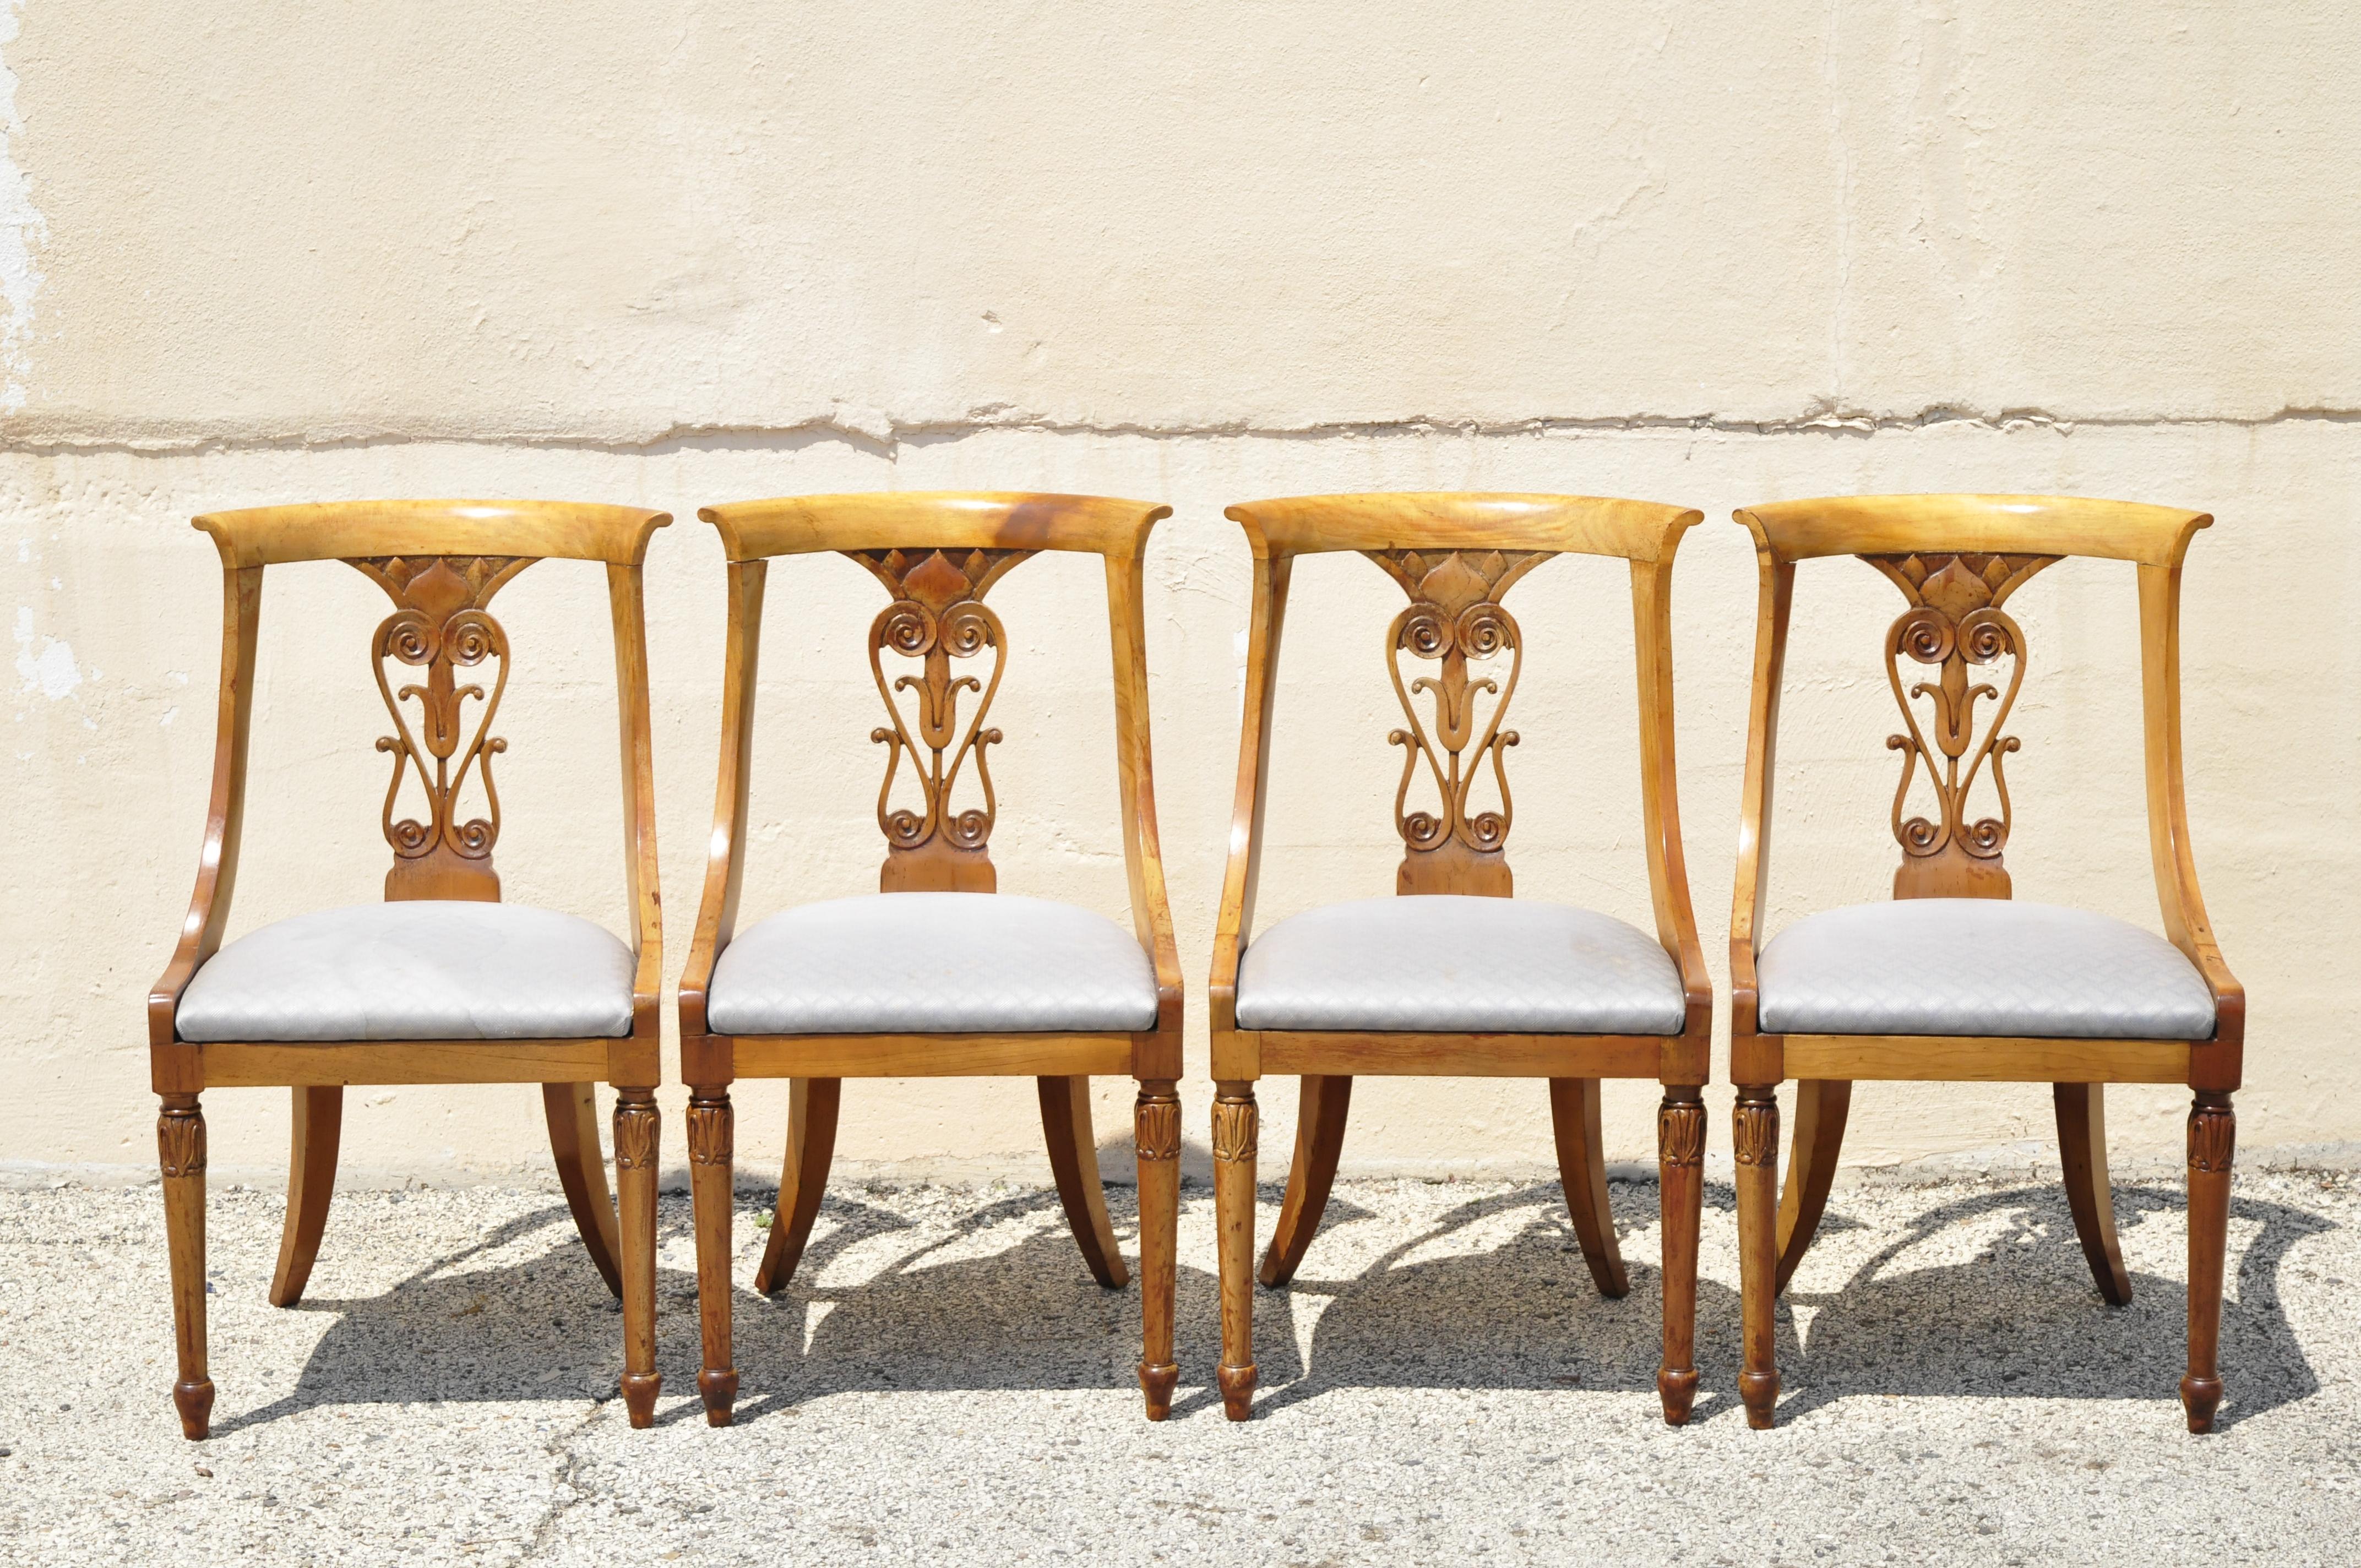 L'ensemble comprend (2) fauteuils rembourrés, (4) chaises latérales à dossier sculpté, dos arqué, construction en bois massif, construction en bois, détails joliment sculptés, pieds sabres galbés, très bel ensemble vintage, artisanat italien de